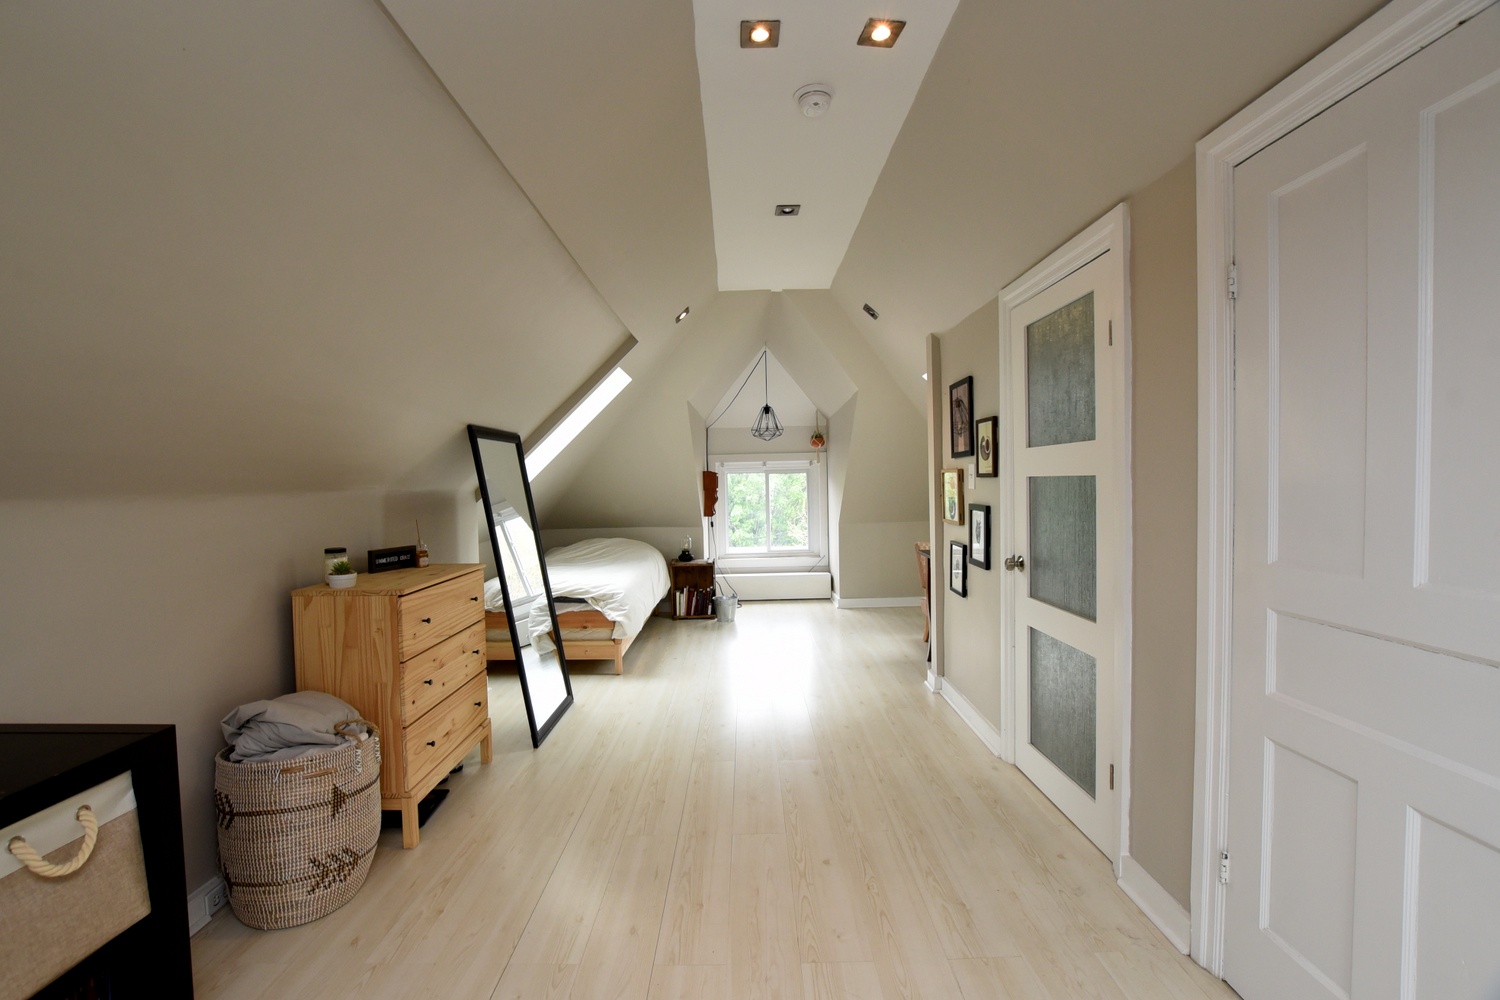 A - Bedroom Loft View